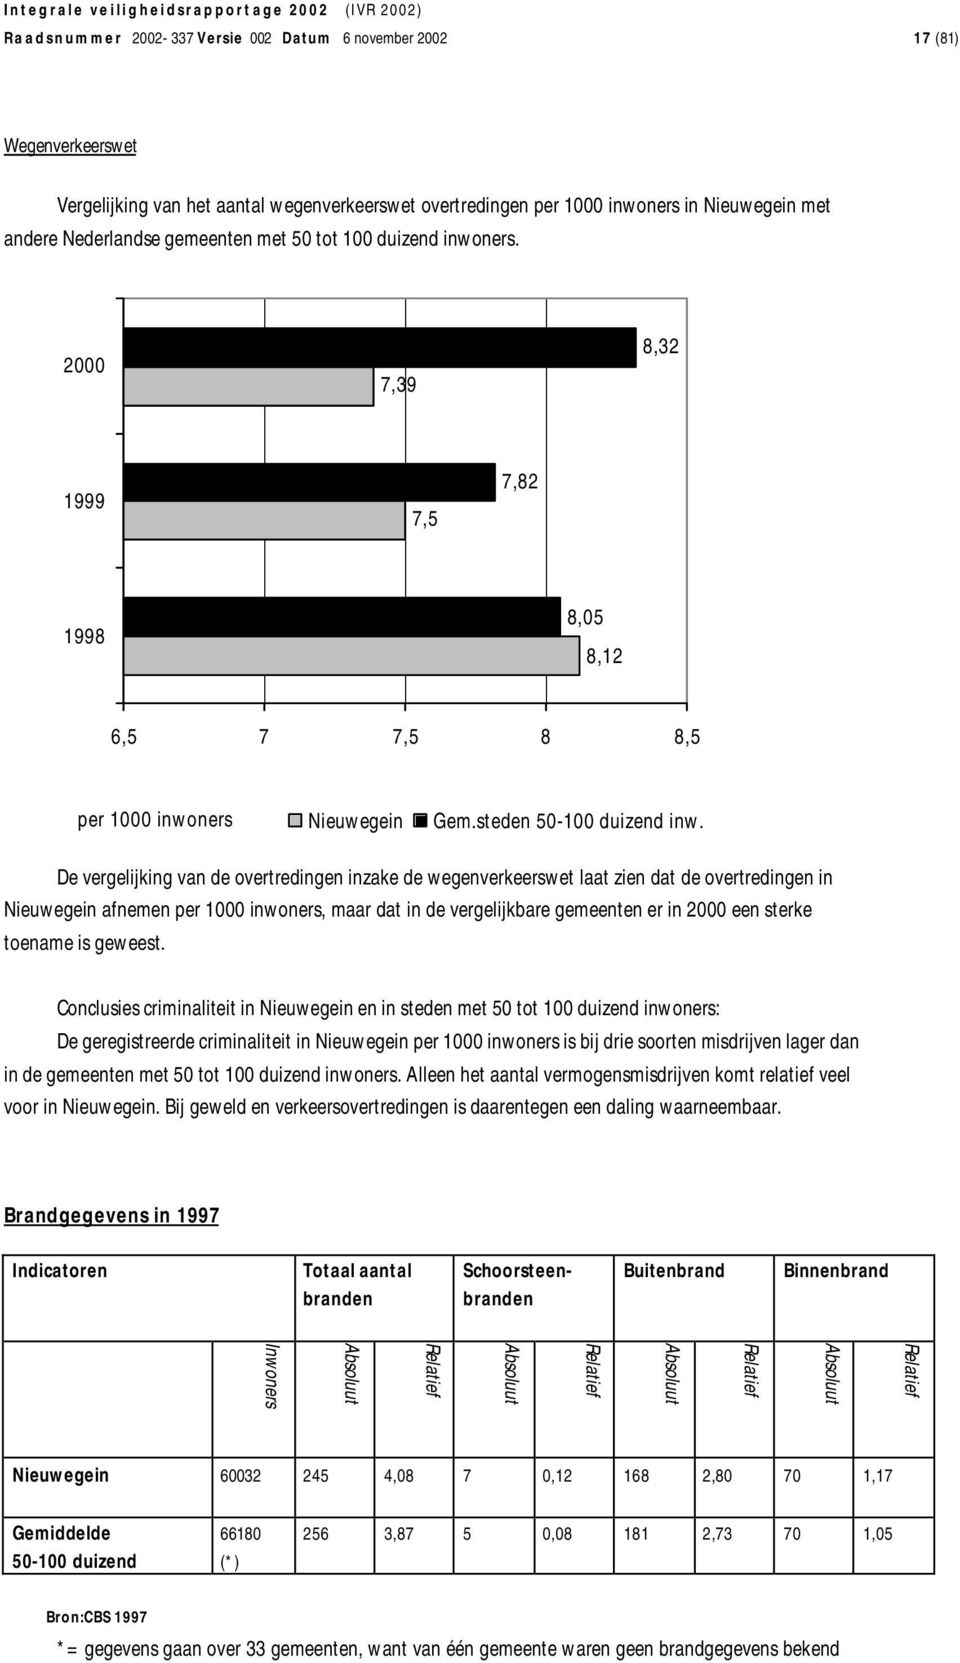 De vergelijking van de overtredingen inzake de wegenverkeerswet laat zien dat de overtredingen in Nieuwegein afnemen per 1000 inwoners, maar dat in de vergelijkbare gemeenten er in 2000 een sterke